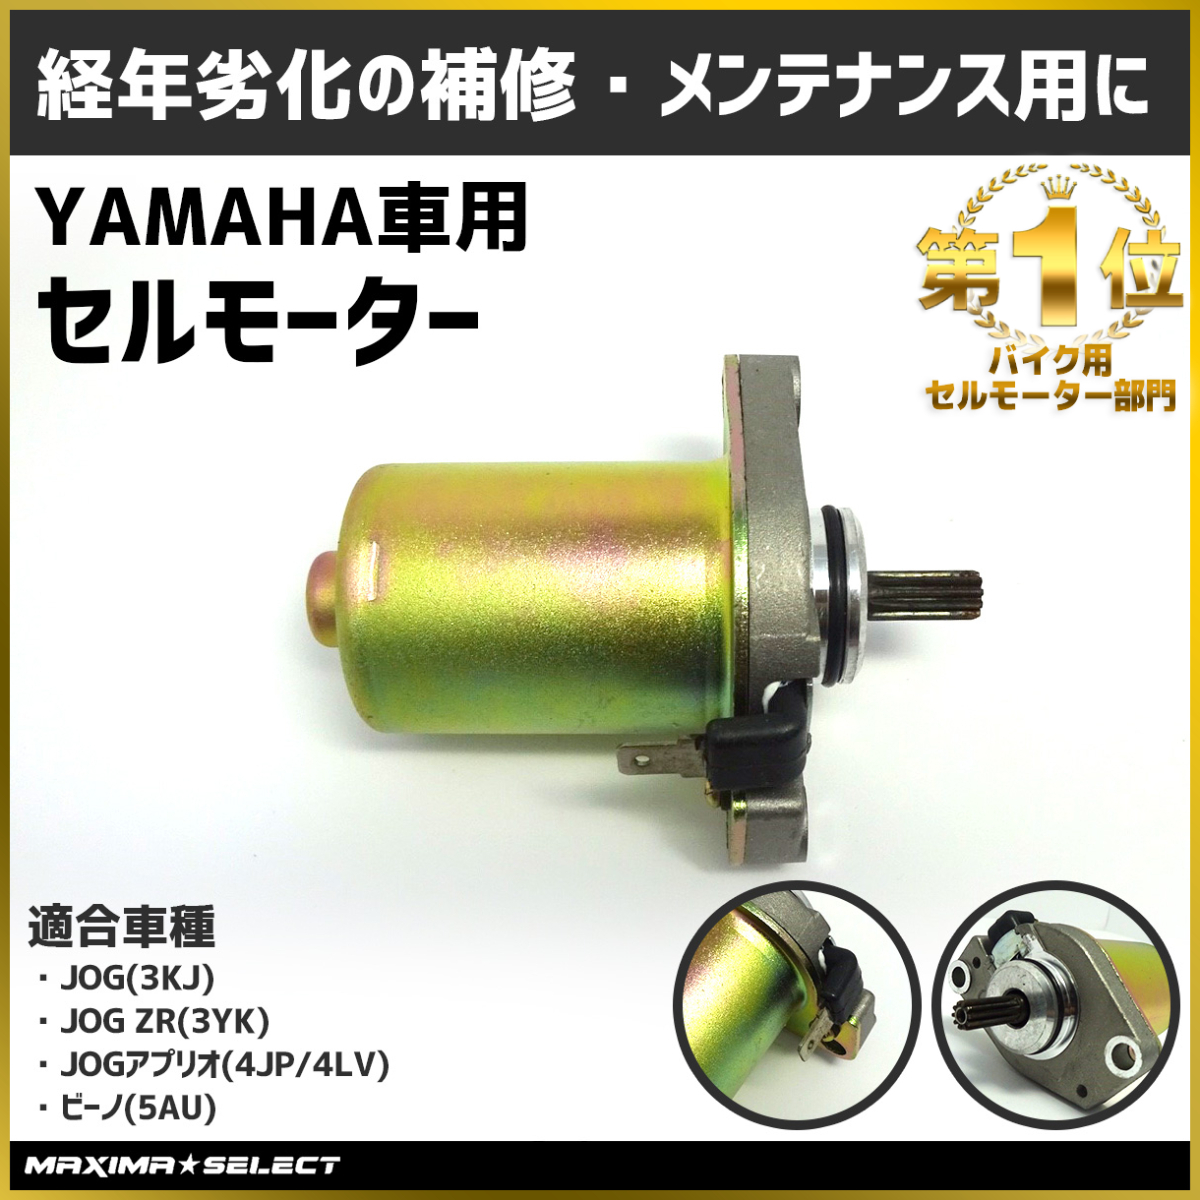  мотоцикл YAMAHA стартерный двигатель Yamaha Aprio Vino Jog техническое обслуживание двигатель детали стартерный двигатель оригинальный такой же детали пусковой двигатель -